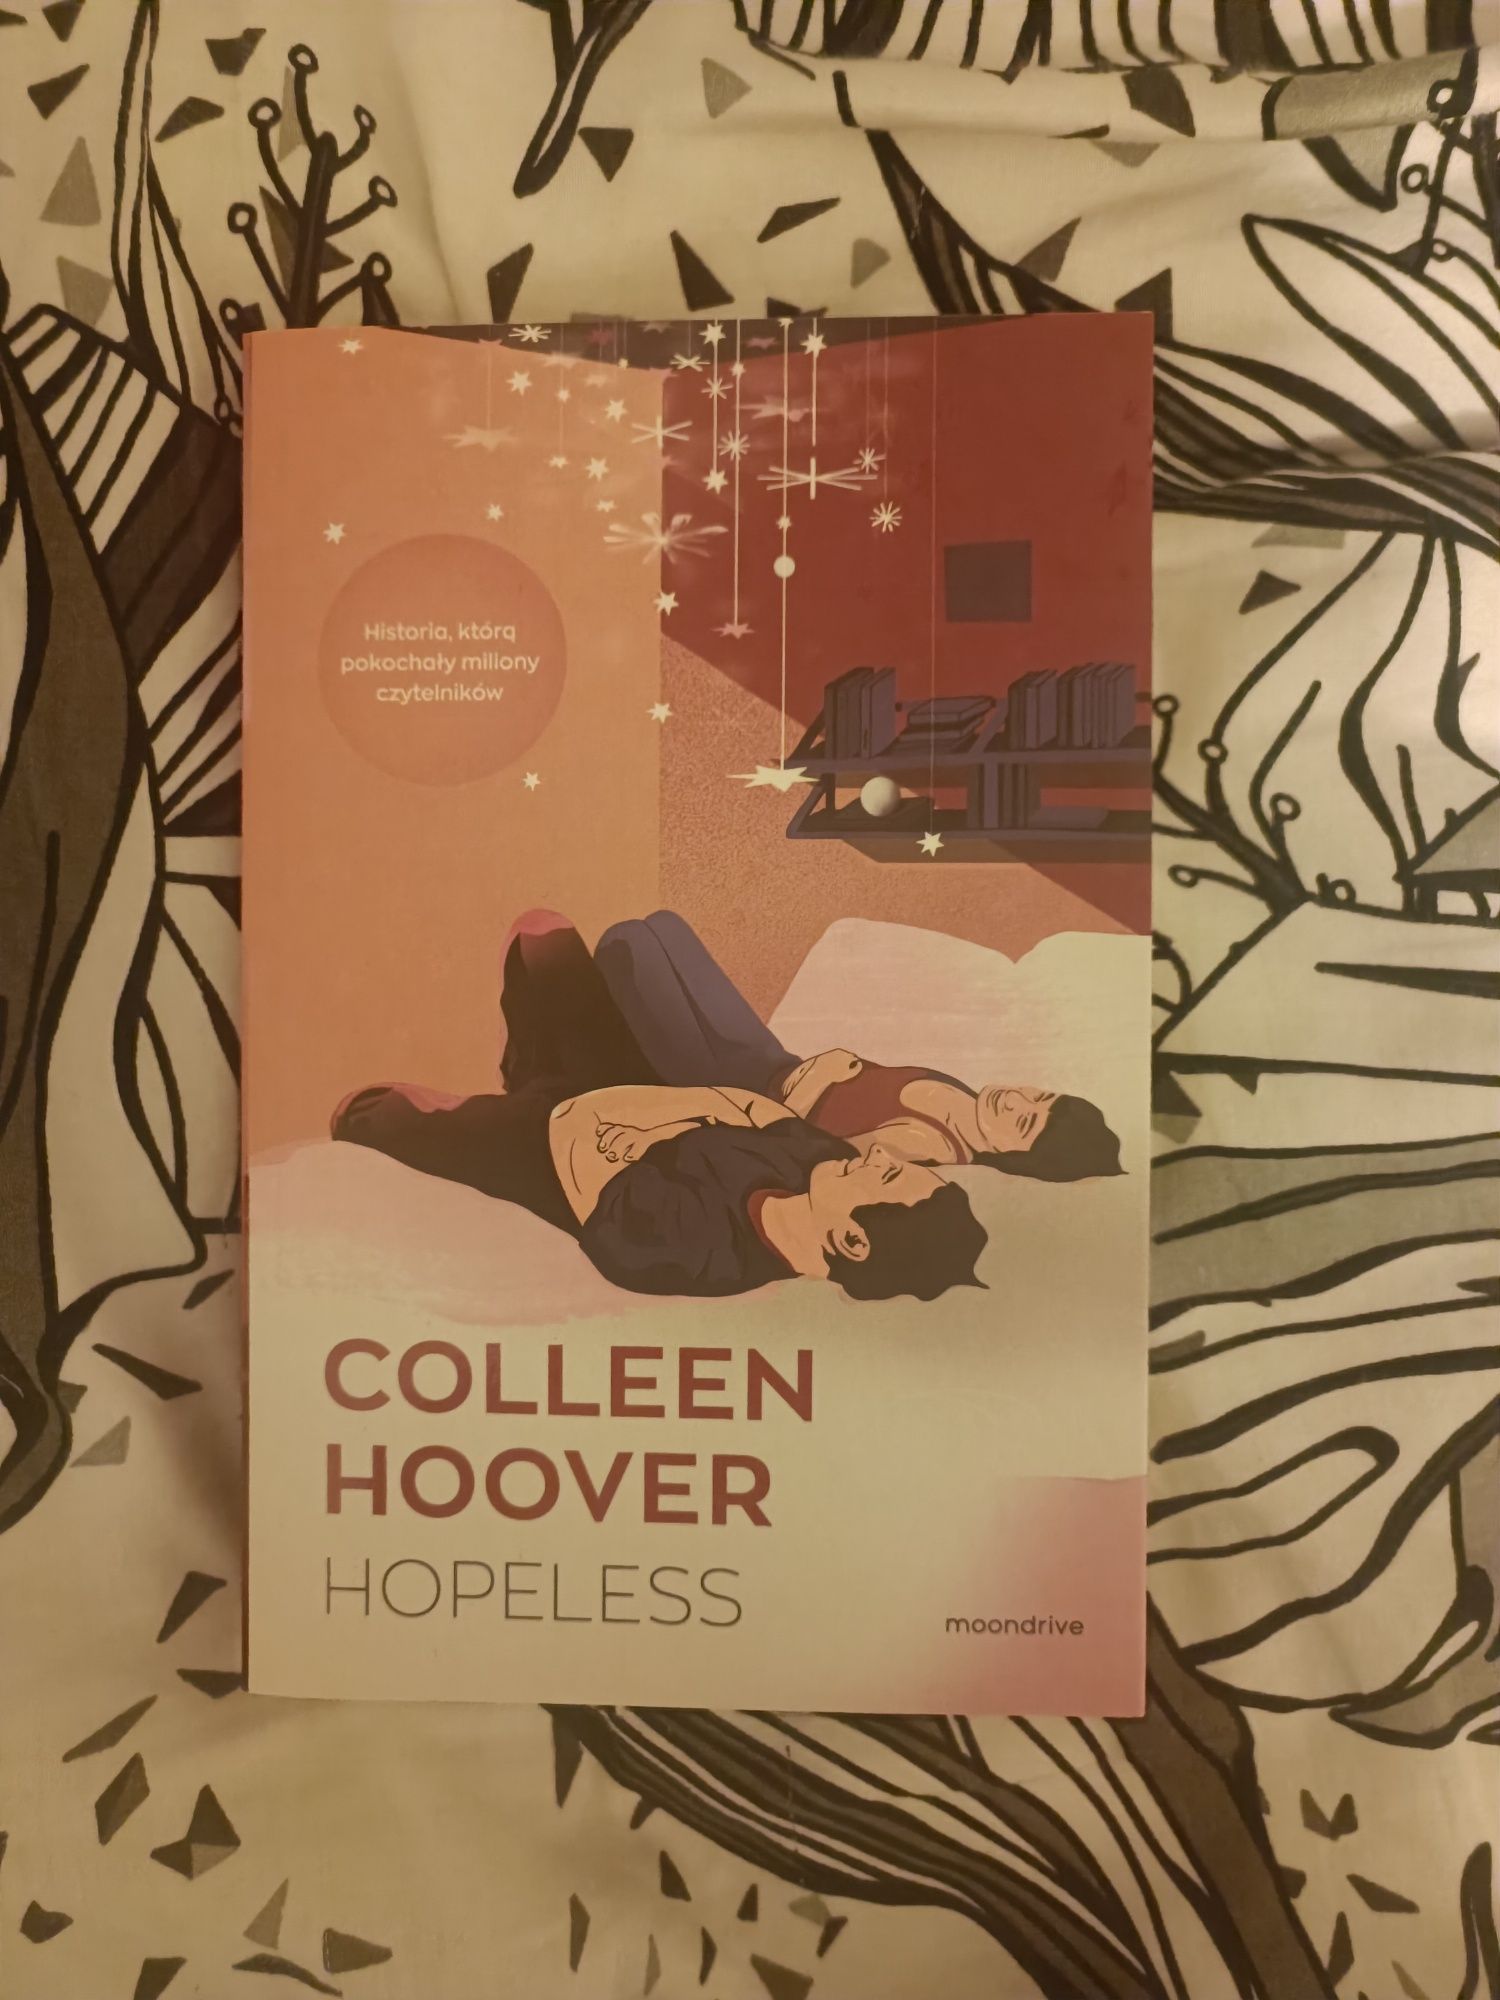 "Hopeless" Colleen Hoover